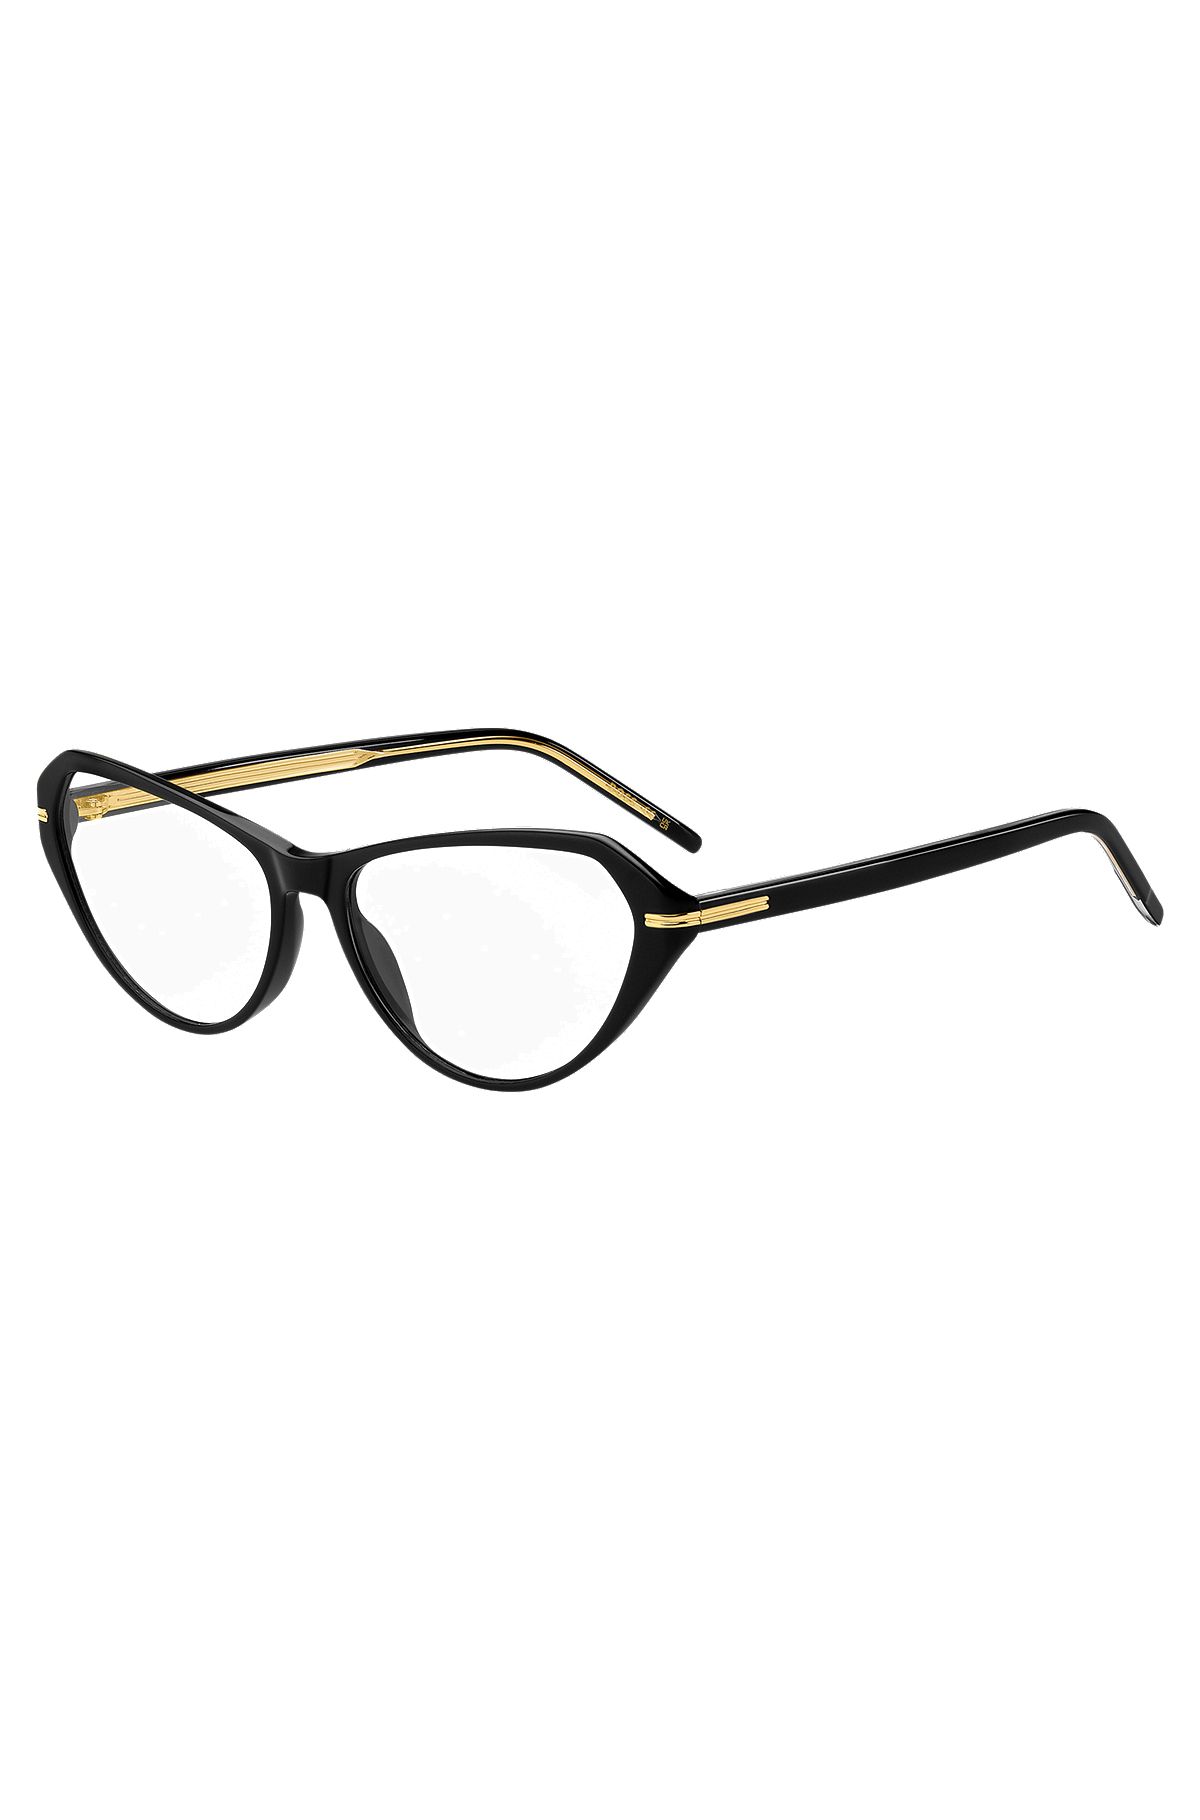 Brillenfassung aus schwarzem Acetat mit goldfarbenen Details, Schwarz